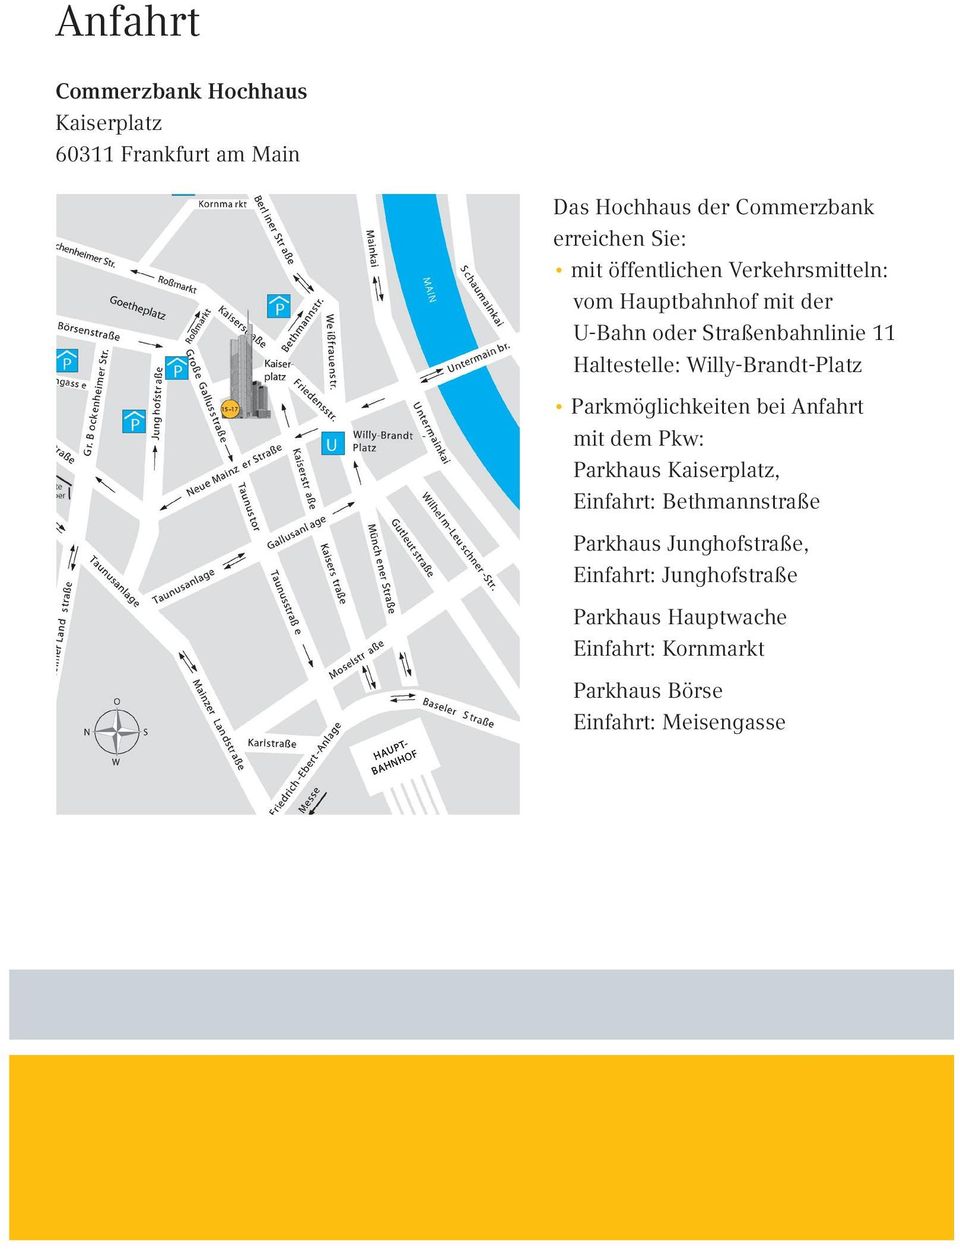 Willy-Brandt-Platz Parkmöglichkeiten bei Anfahrt mit dem Pkw: Parkhaus Kaiserplatz, Einfahrt: Bethmannstraße